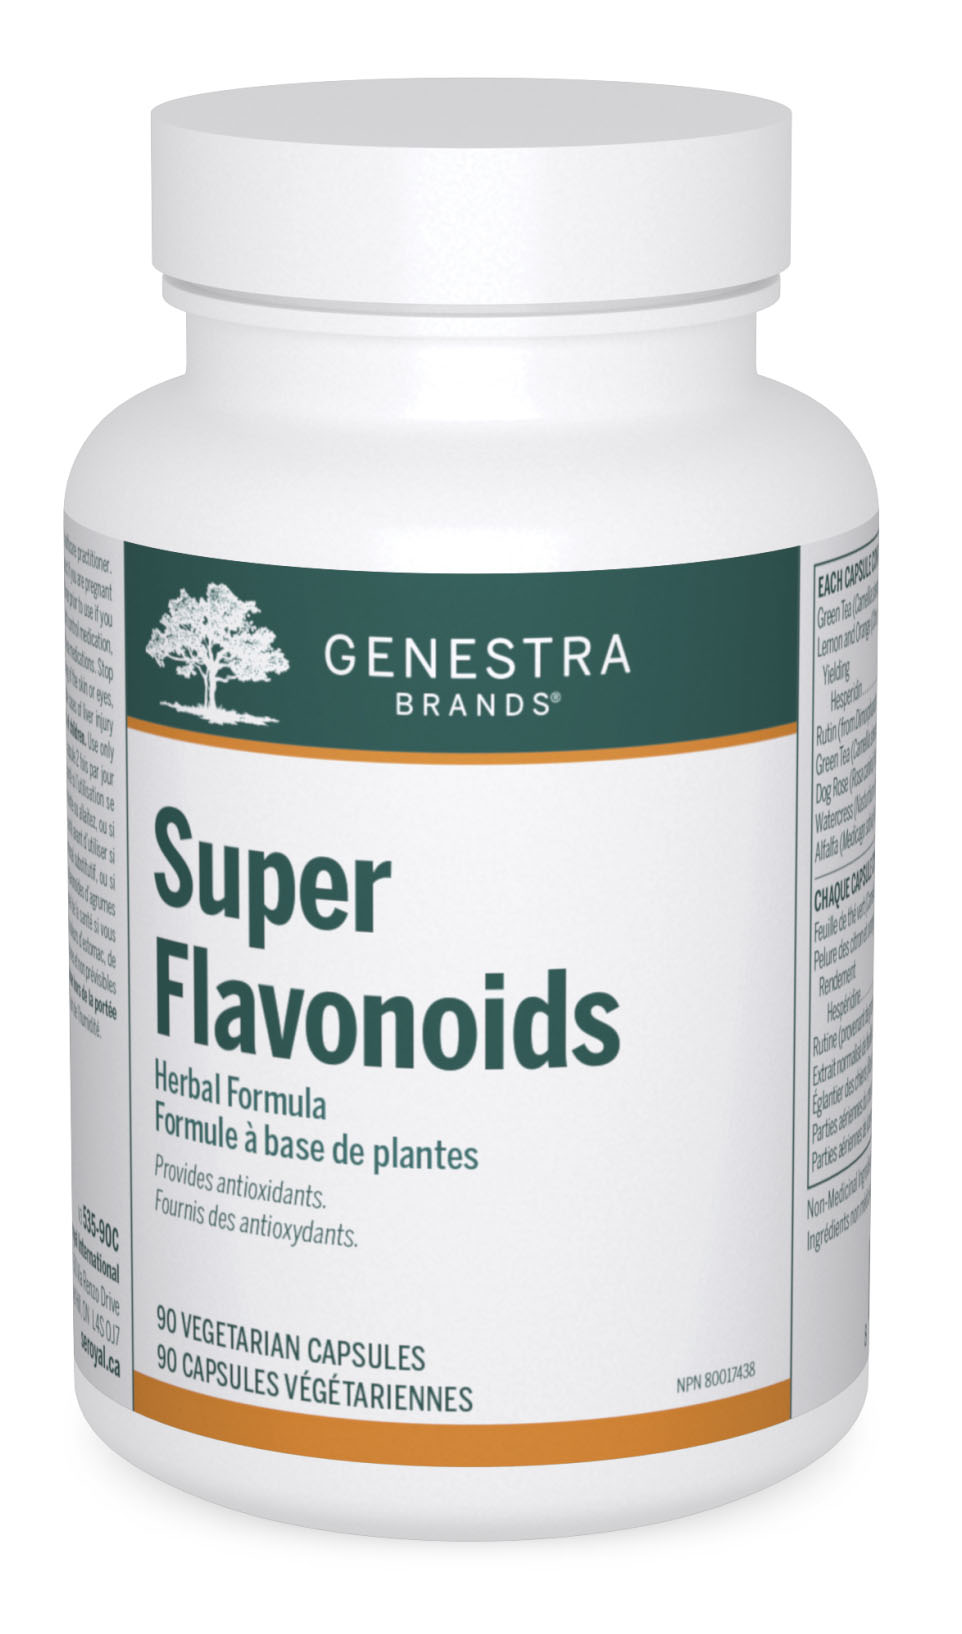 GENESTRA Super Flavonoids (90 veg caps)